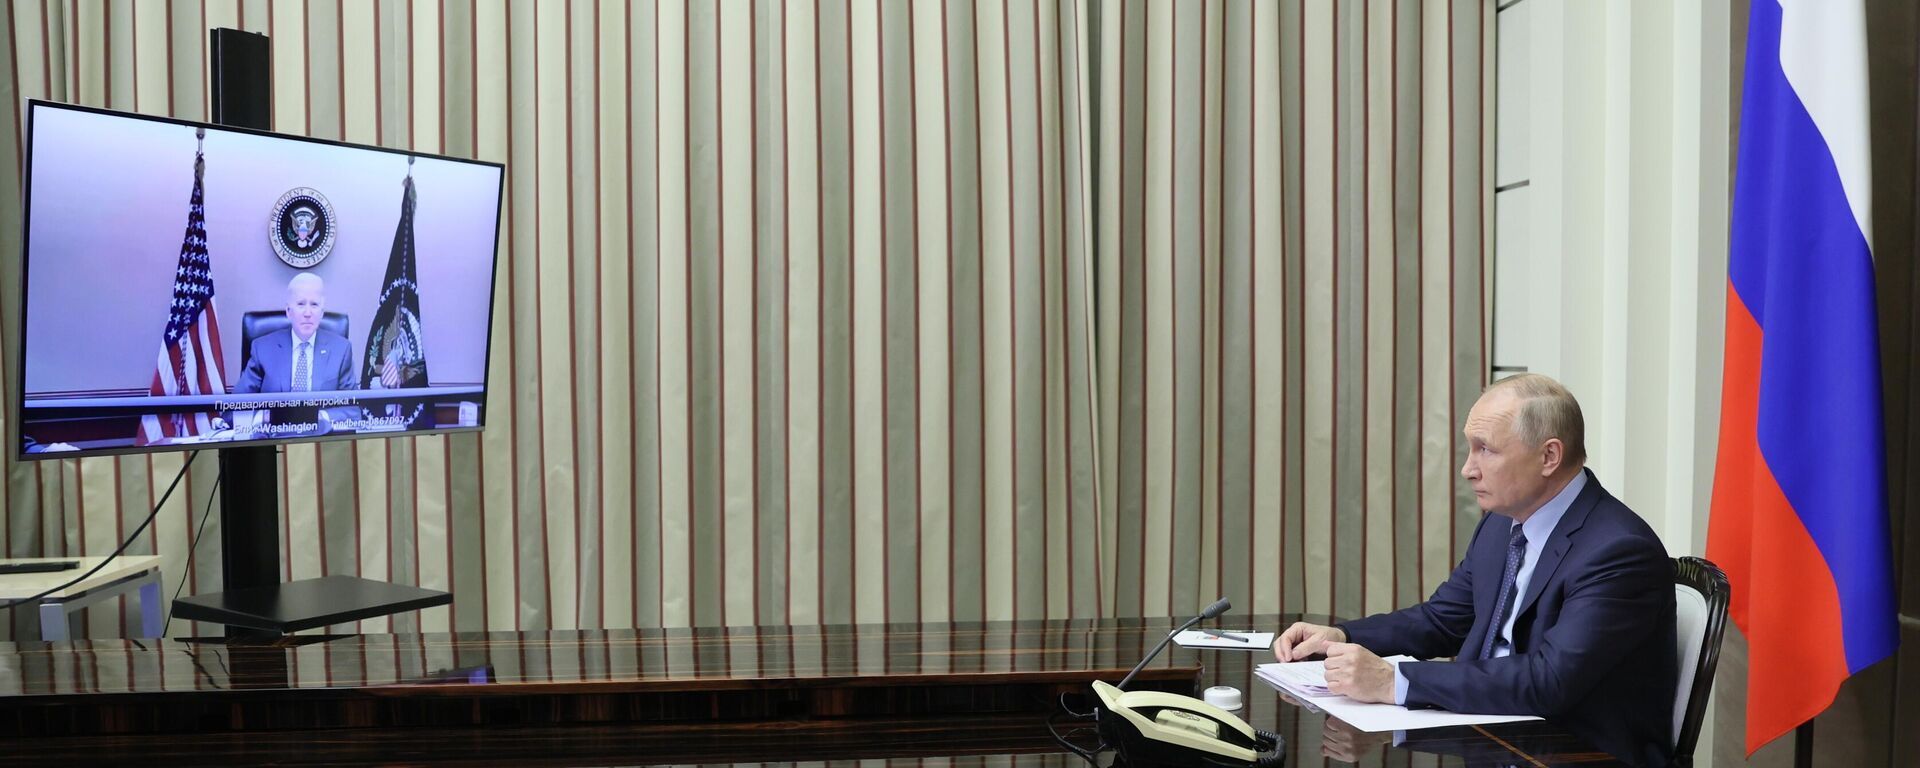 Разговор Владимира Путина и Џозефа Бајдена путем видео линка - Sputnik Србија, 1920, 08.12.2021